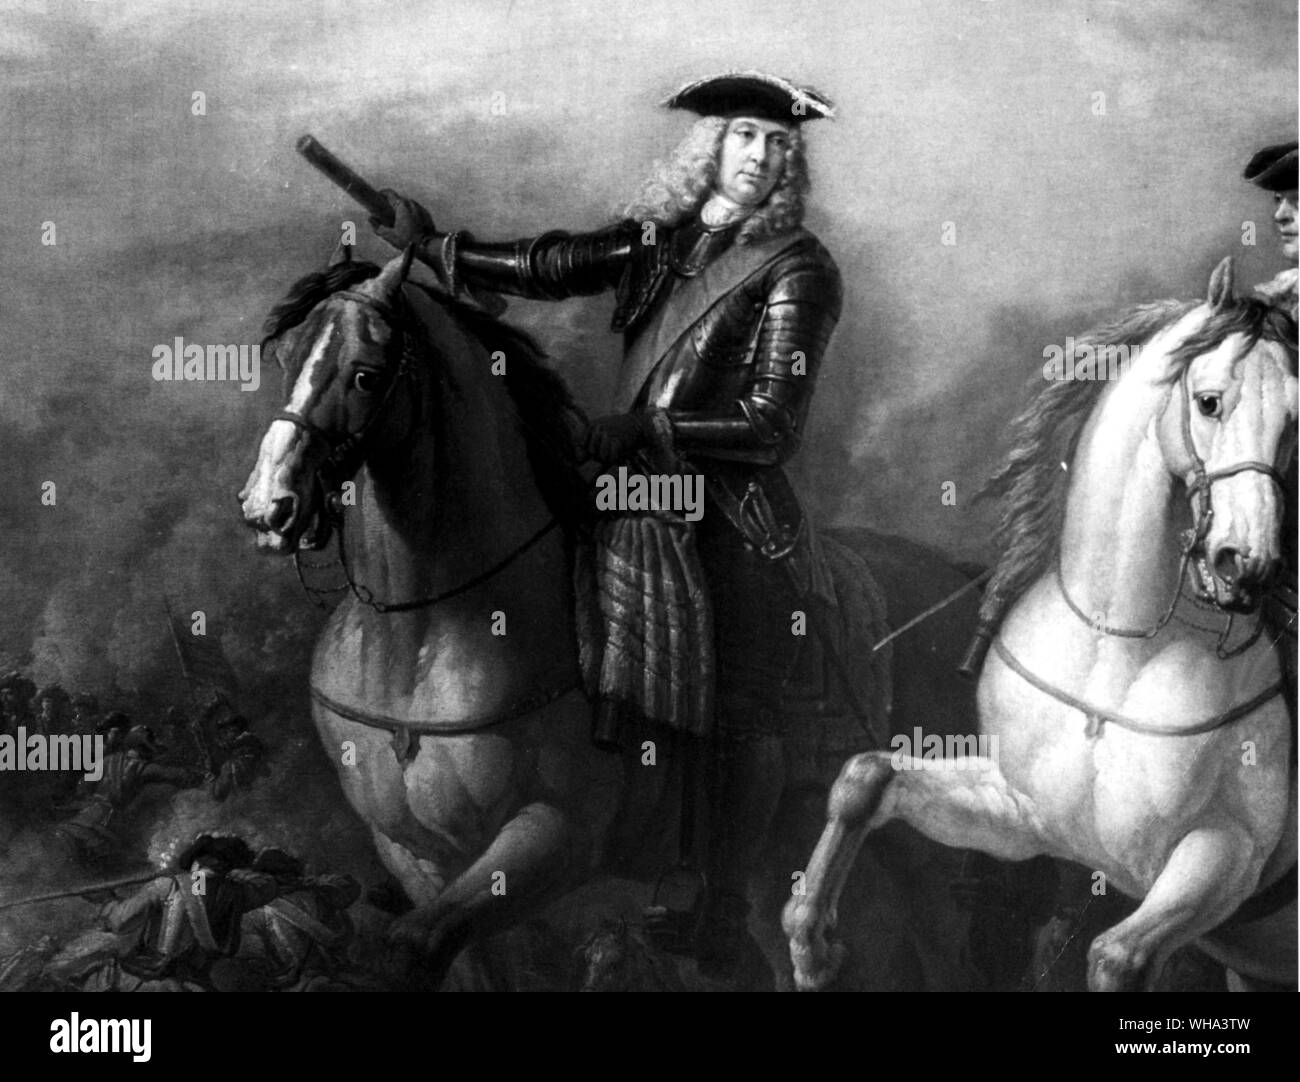 Dettaglio di un dipinto della battaglia di Blenheim Foto Stock